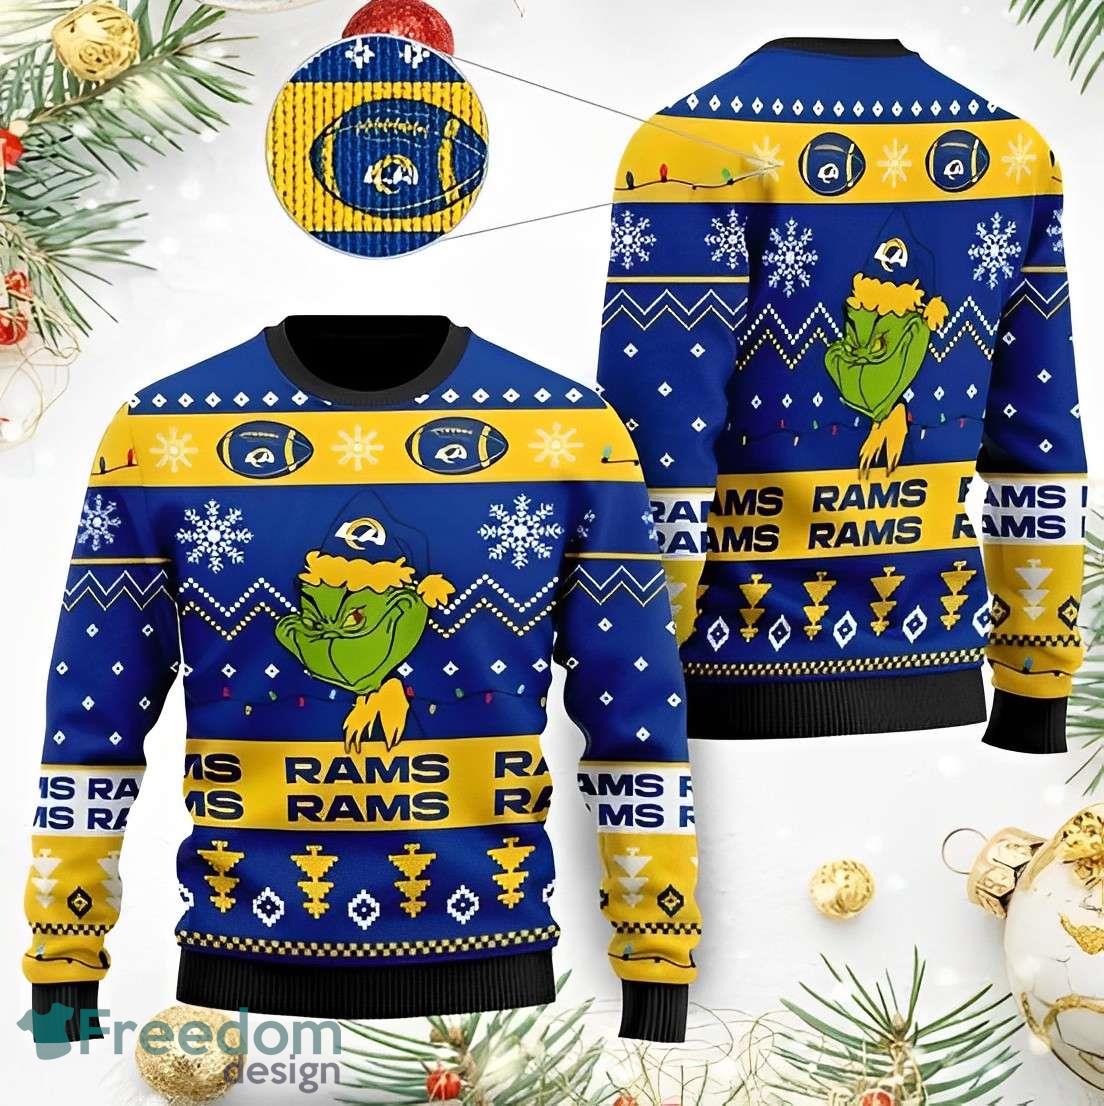 la rams ugly christmas sweater